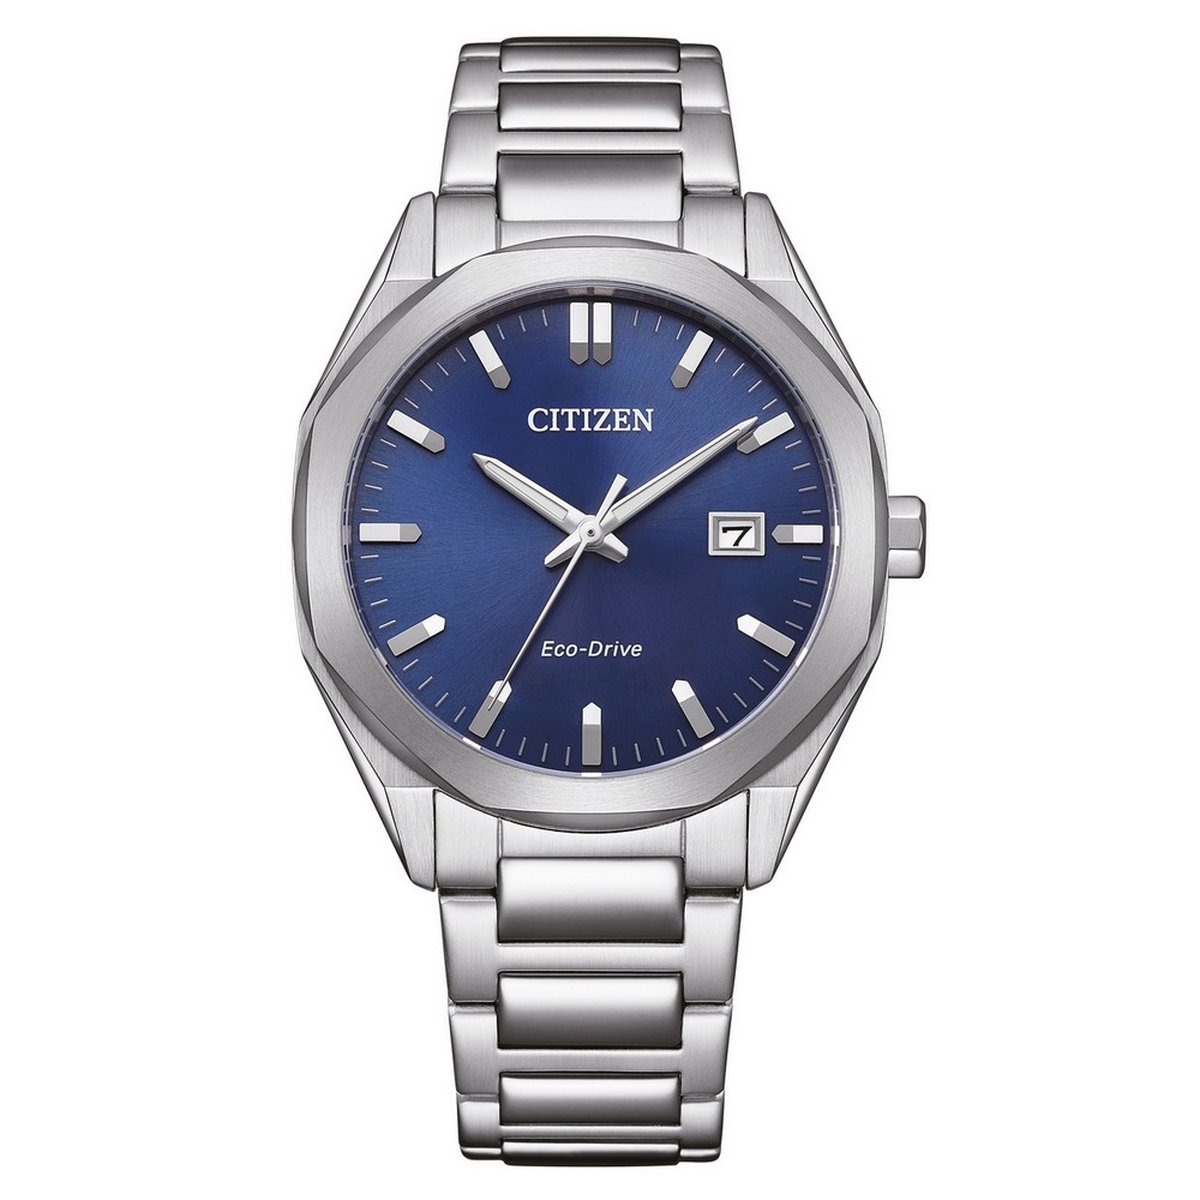 Citizen BM7620-83L Heren horloge Eco-drive staal met blauwe wijzerplaat